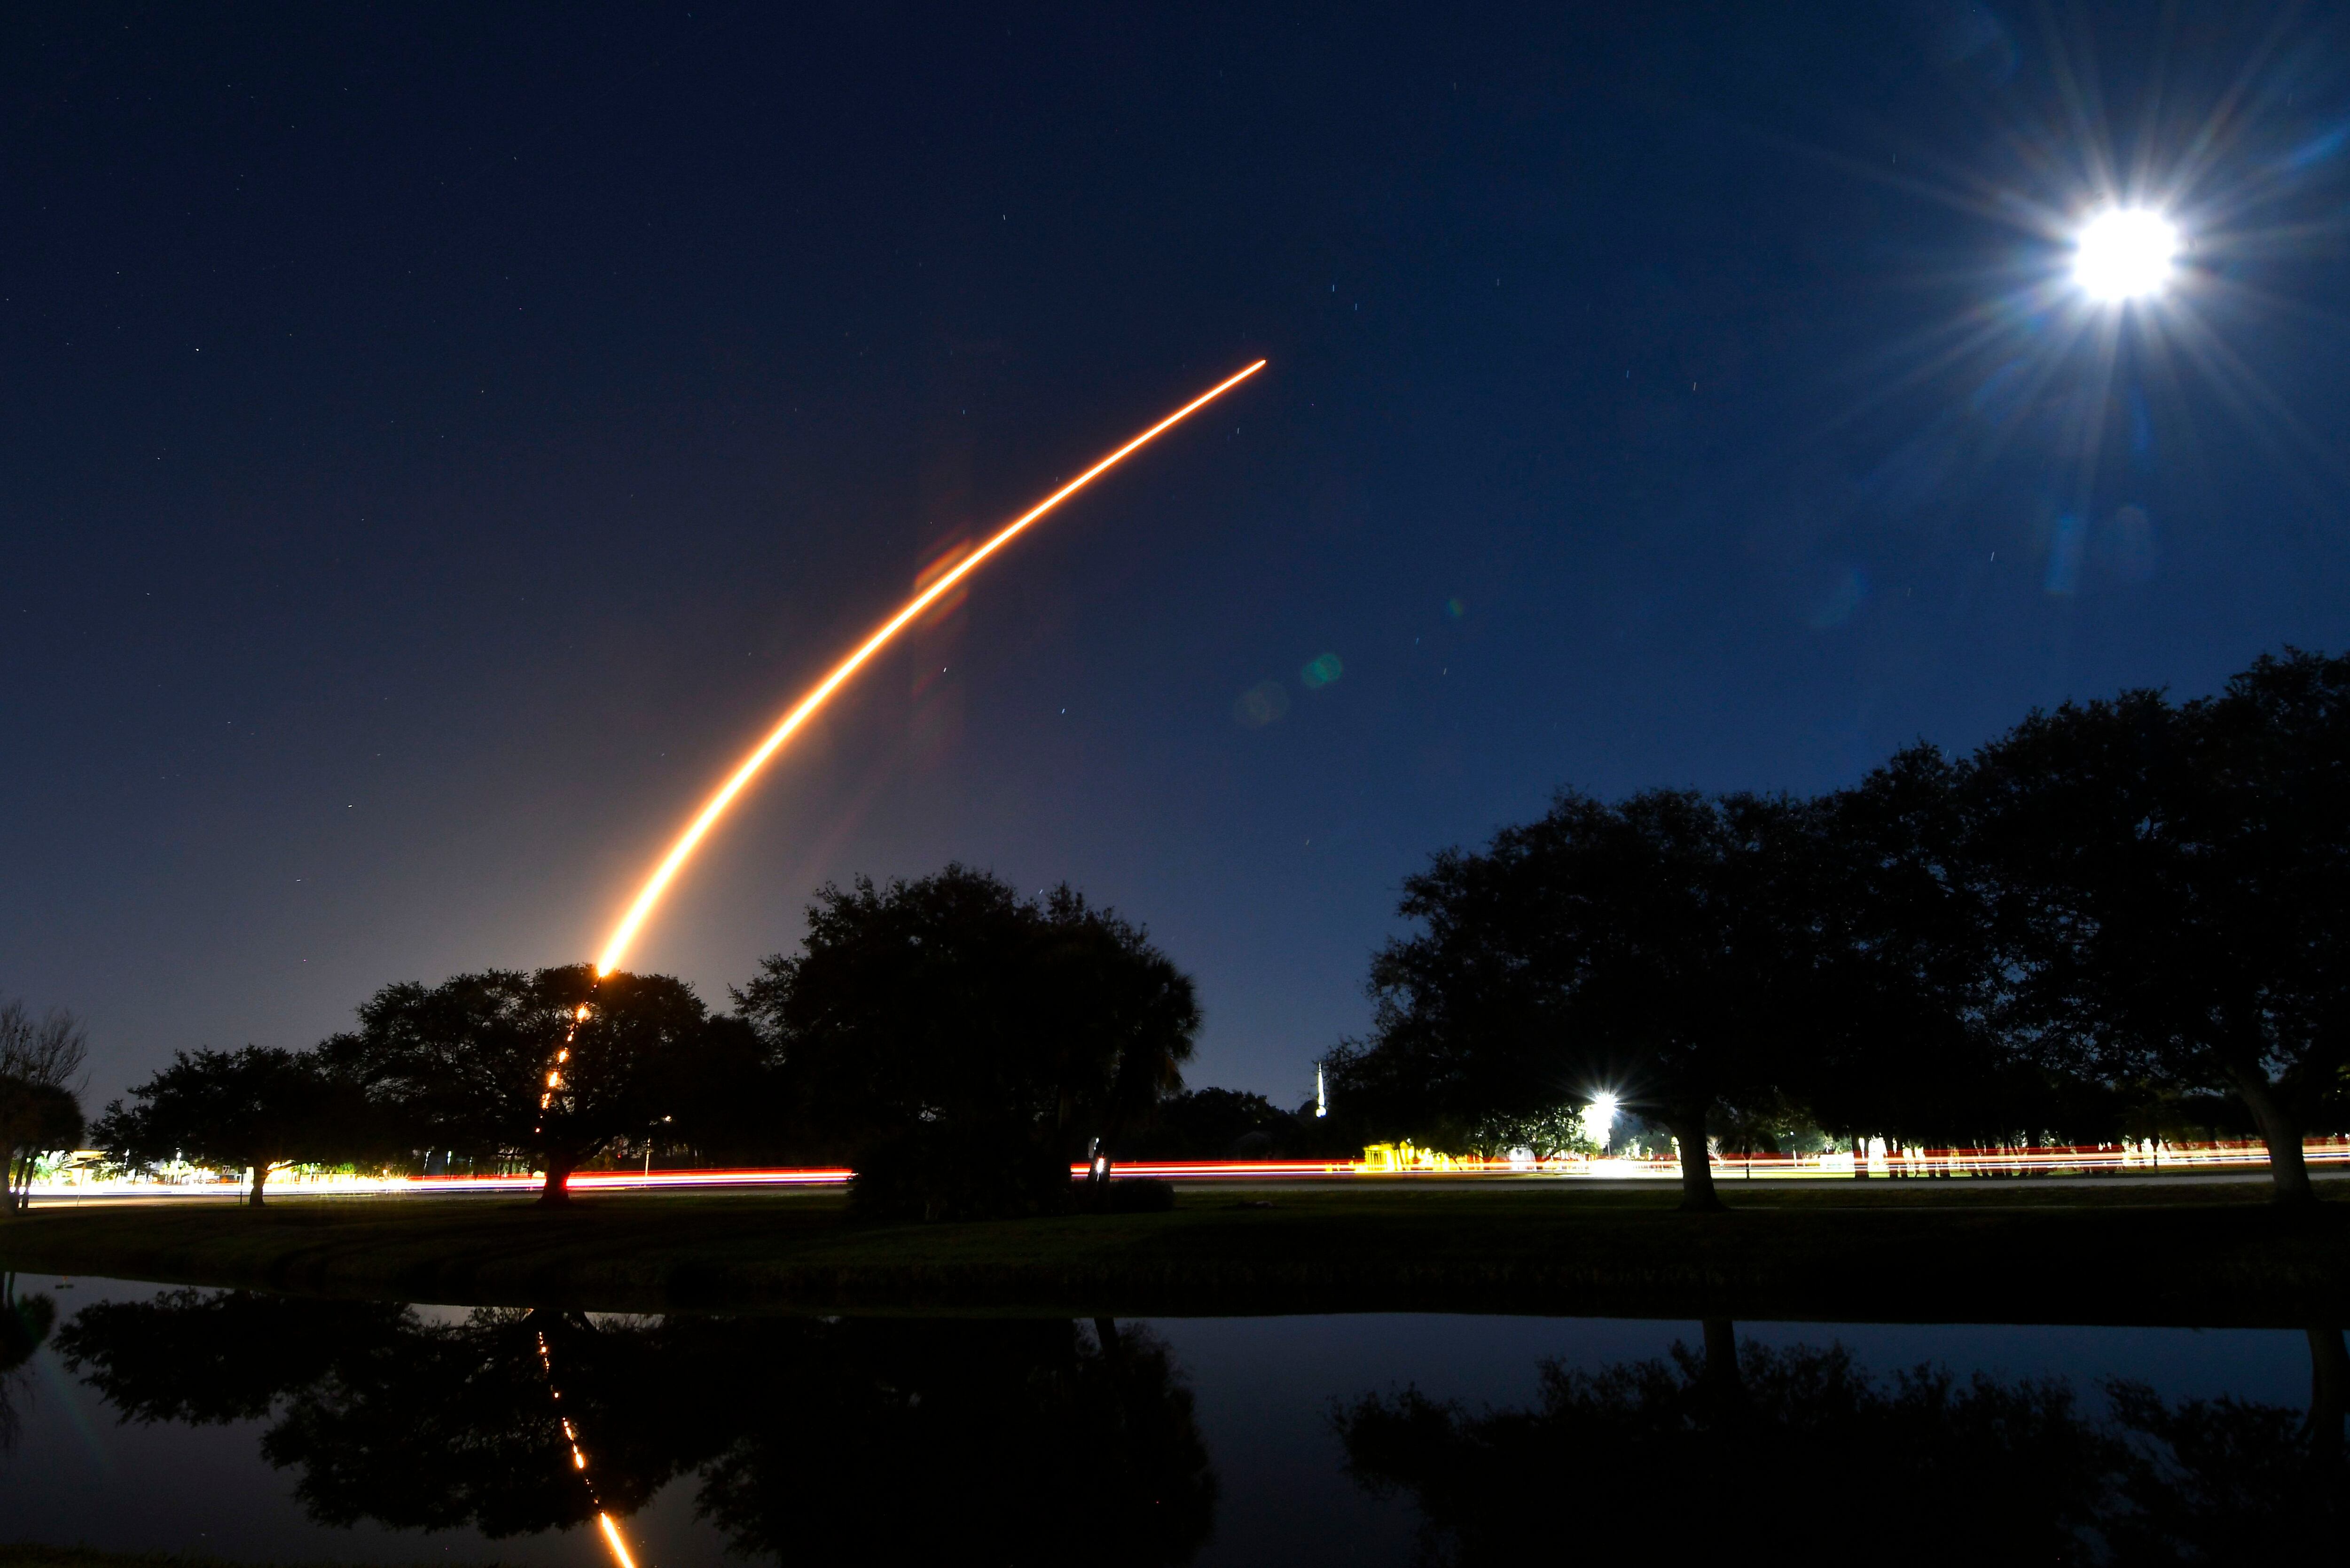 Imagen del reciente lanzamiento de un cohete de SpaceX Falcon 9, en Florida, el 18 de enero.